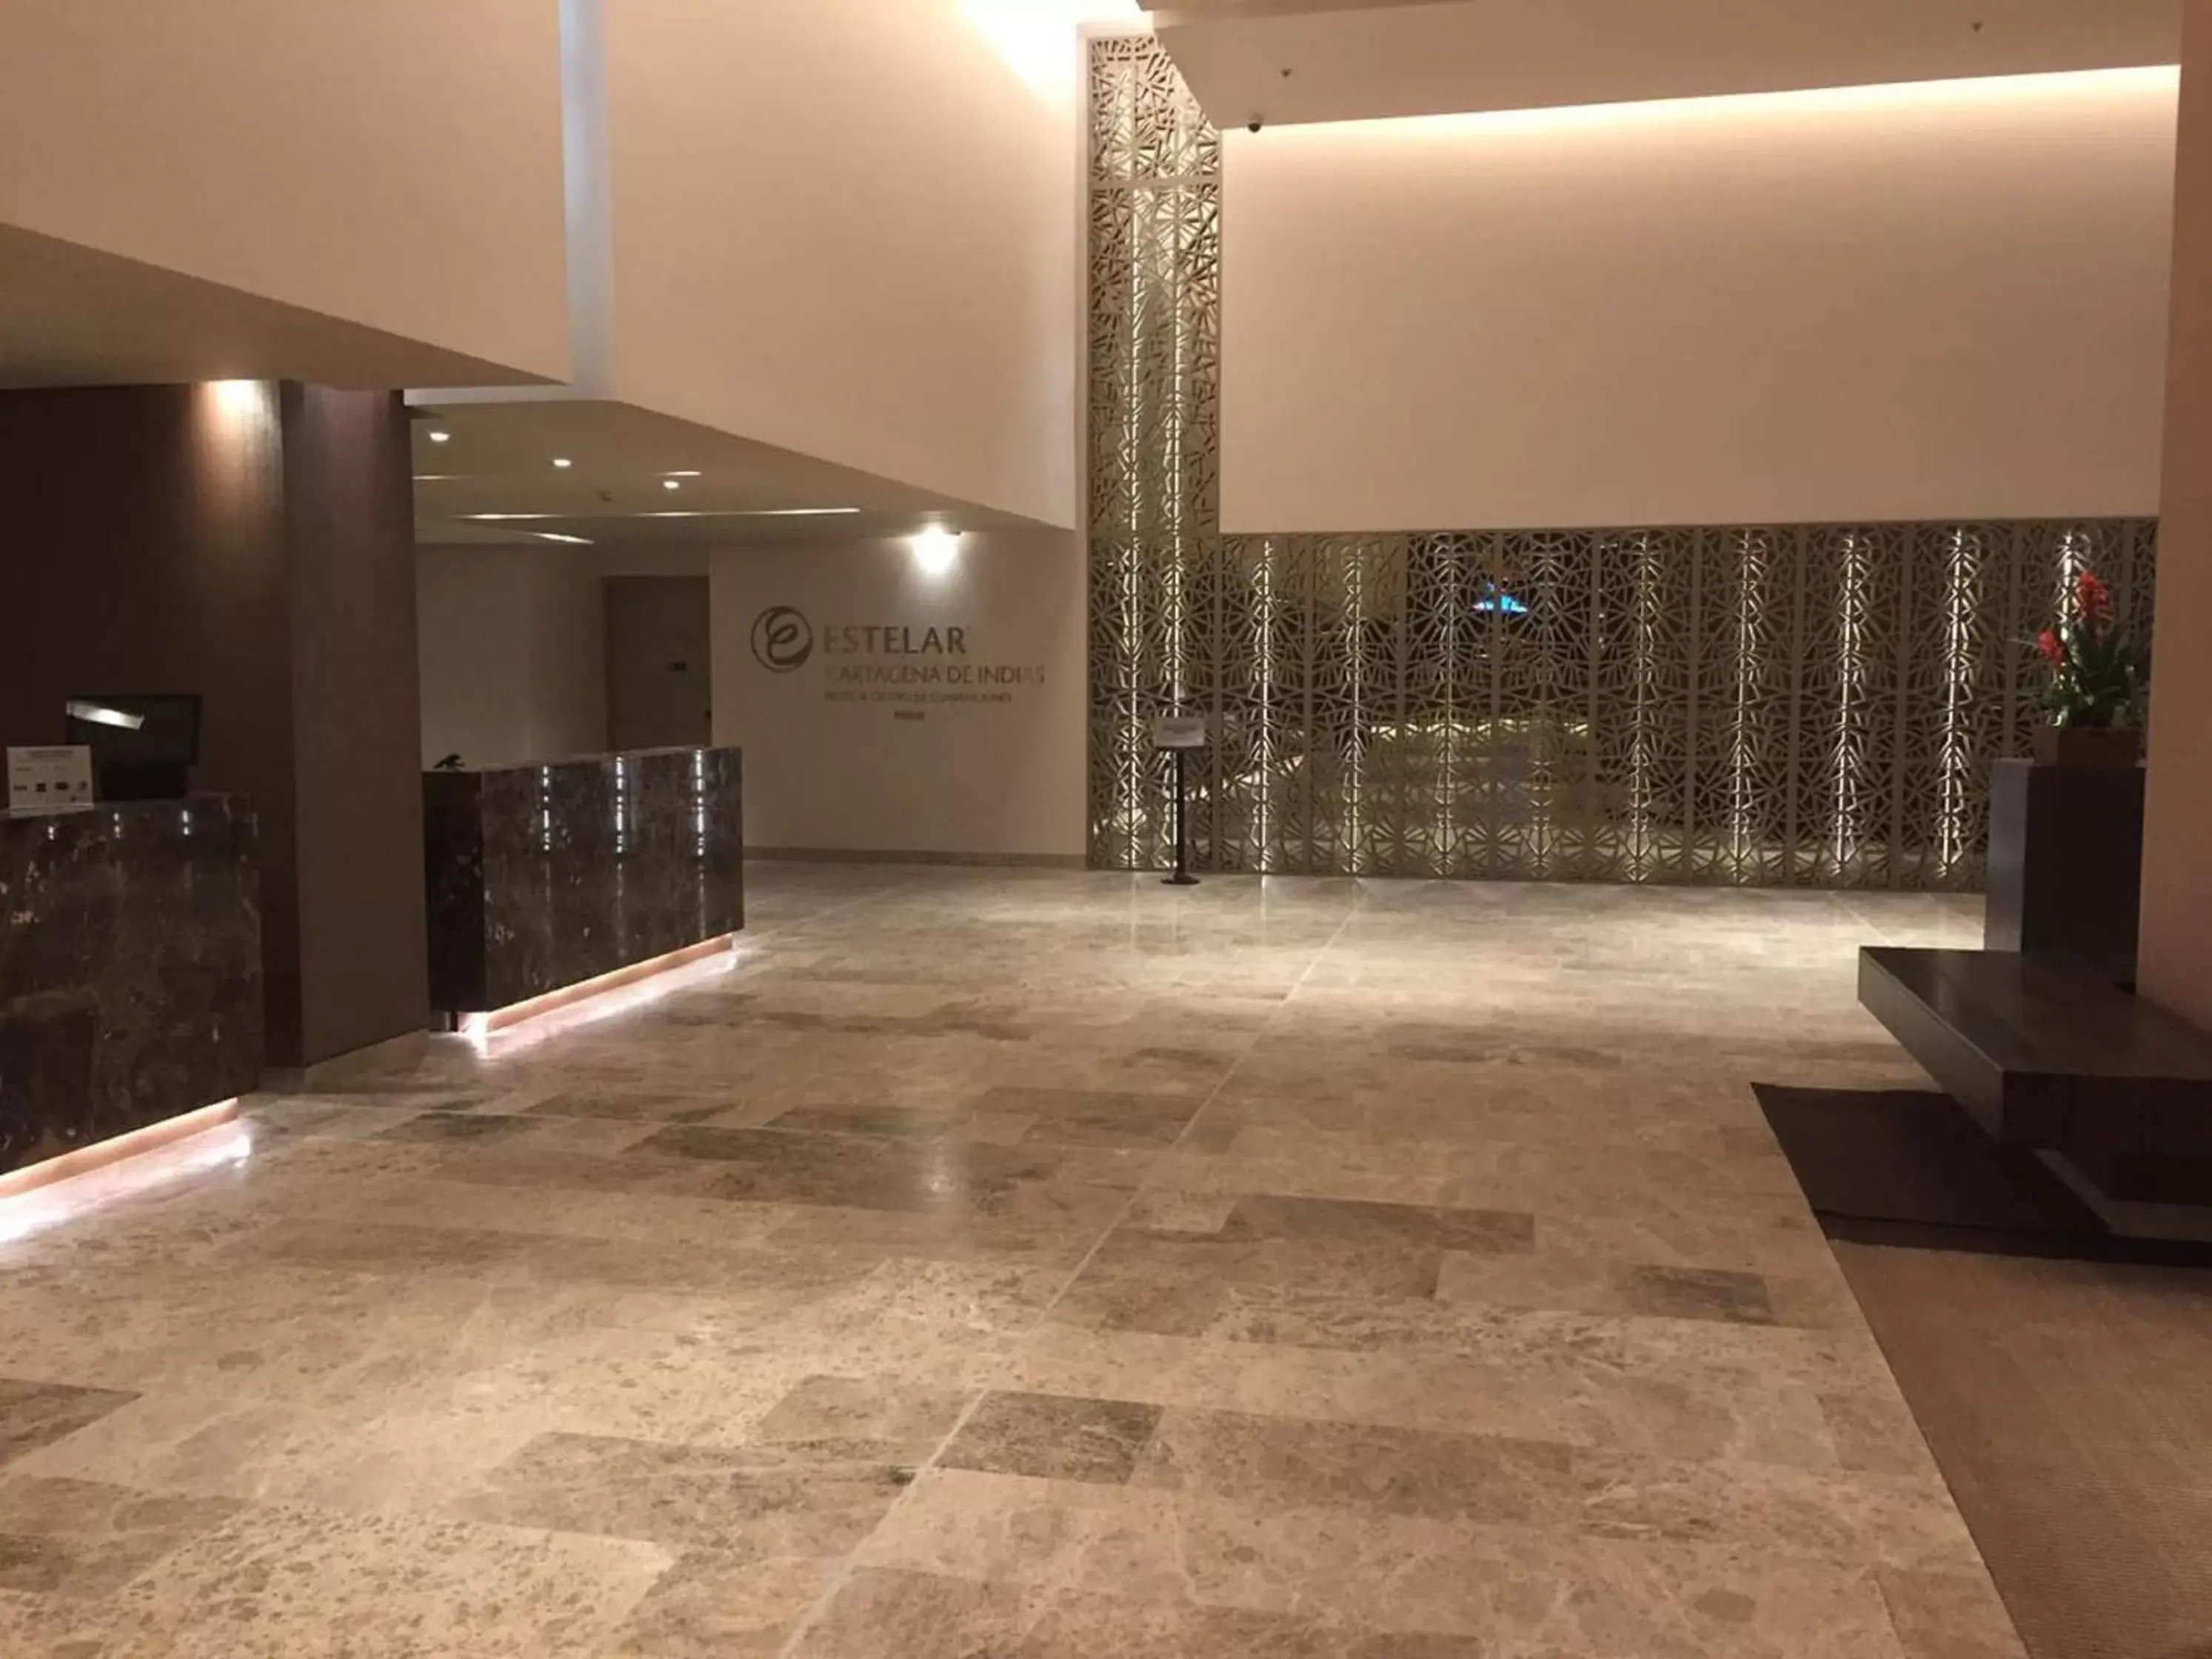 Lobby or reception, Lobby/Reception in Estelar Cartagena de Indias Hotel y Centro de Convenciones